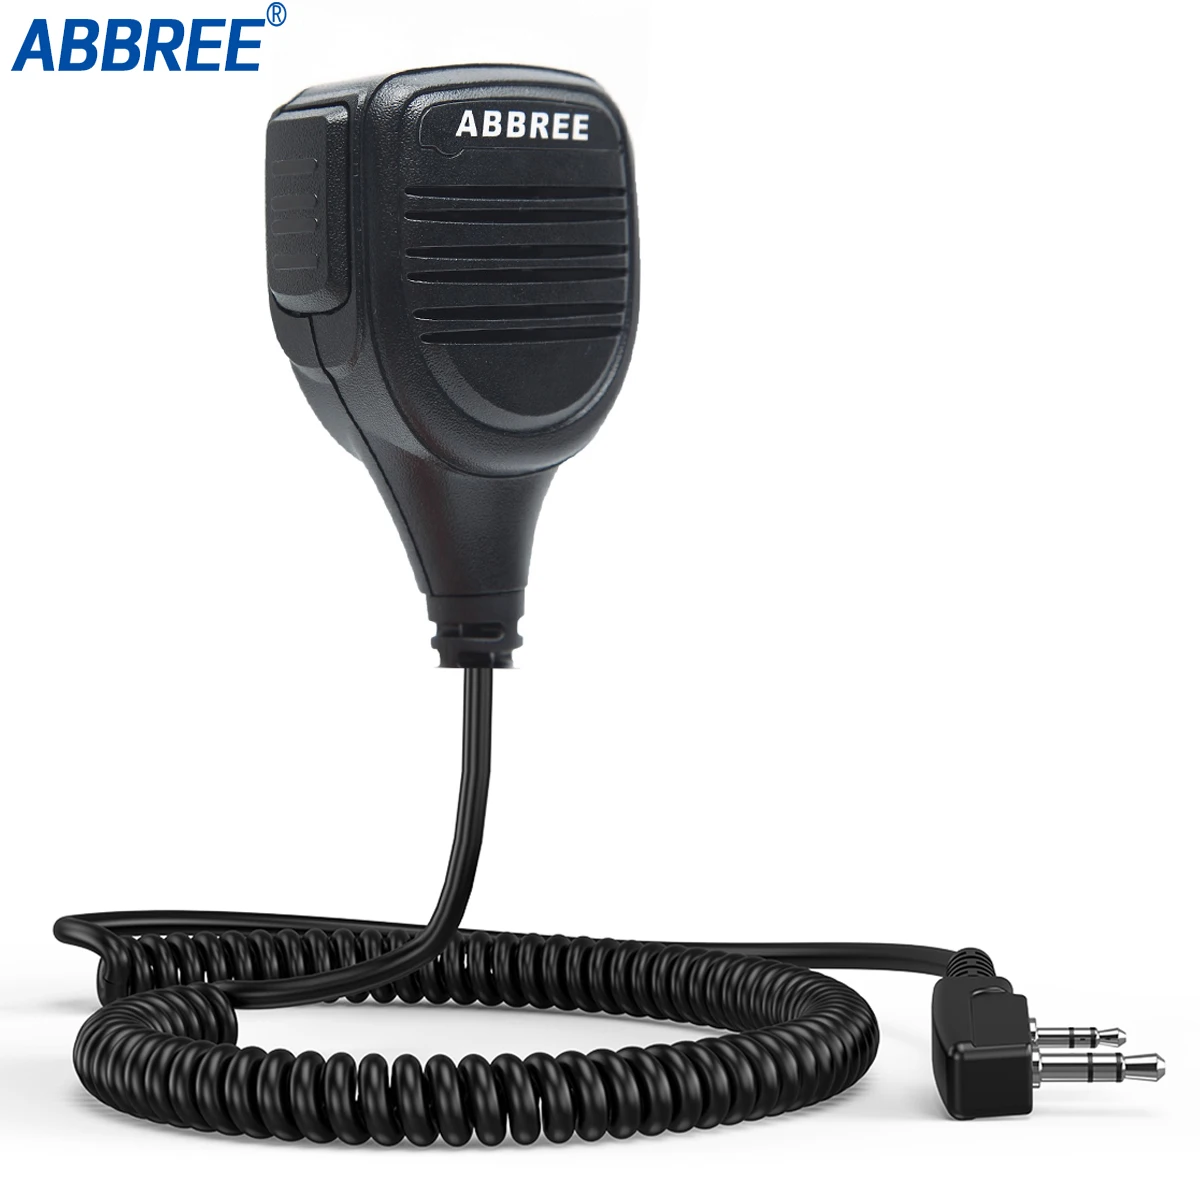 구매 ABBREE AR-760 라디오 스피커 마이크 PTT 휴대용 양방향 라디오 워키 토키 Baofeng UV-5R UV-82 BF-888S